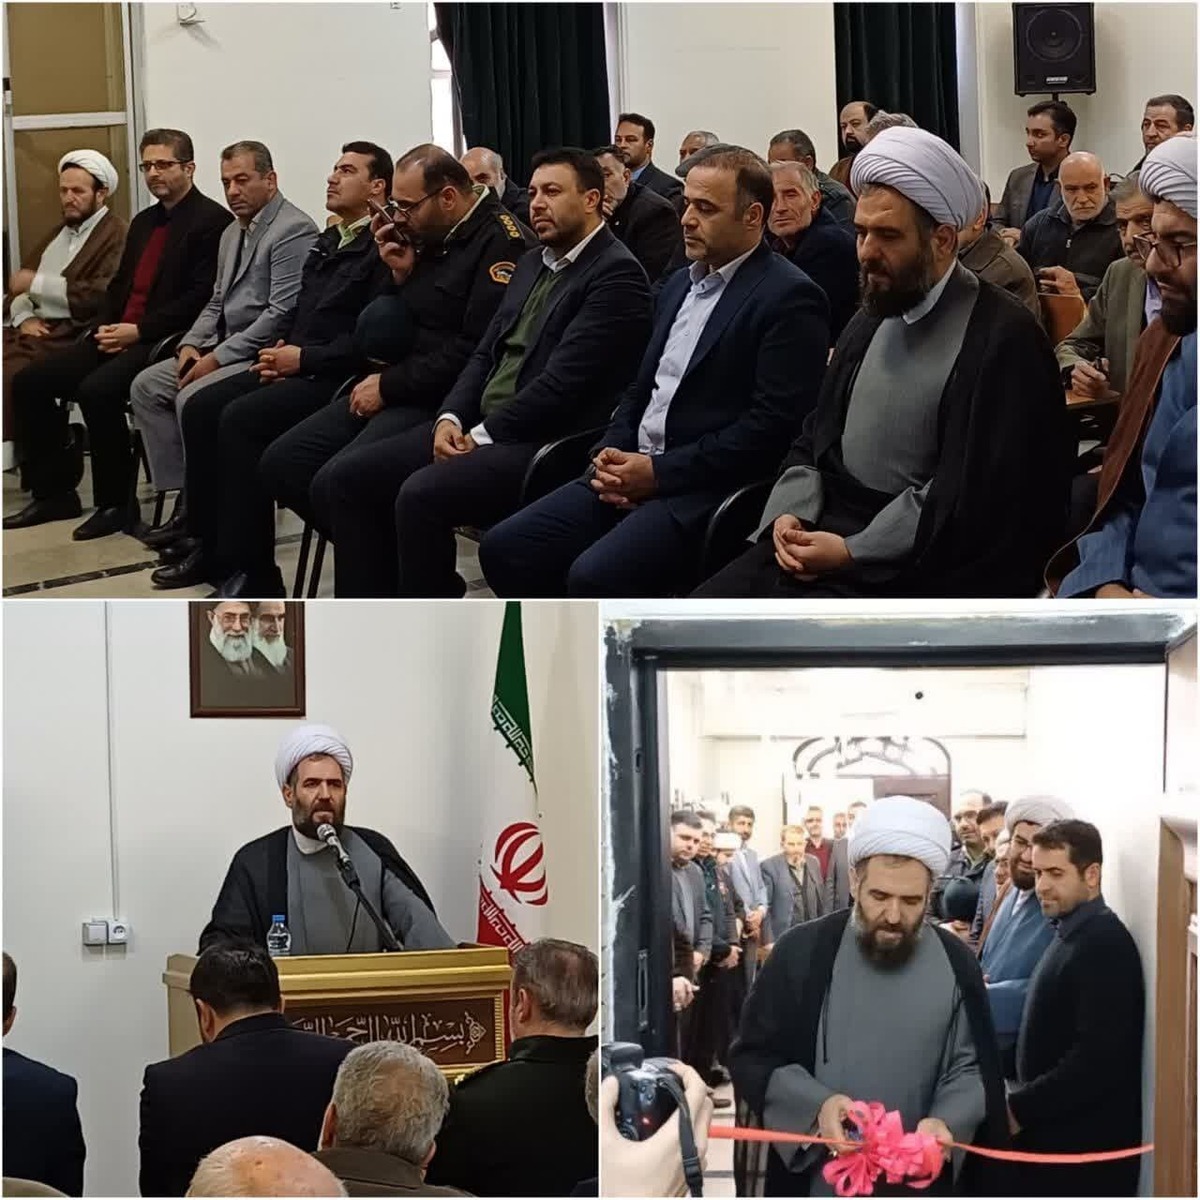 برگزاری مراسم افتتاح قرارگاه فرهنگی آموزشی آدینه شهر مهستان